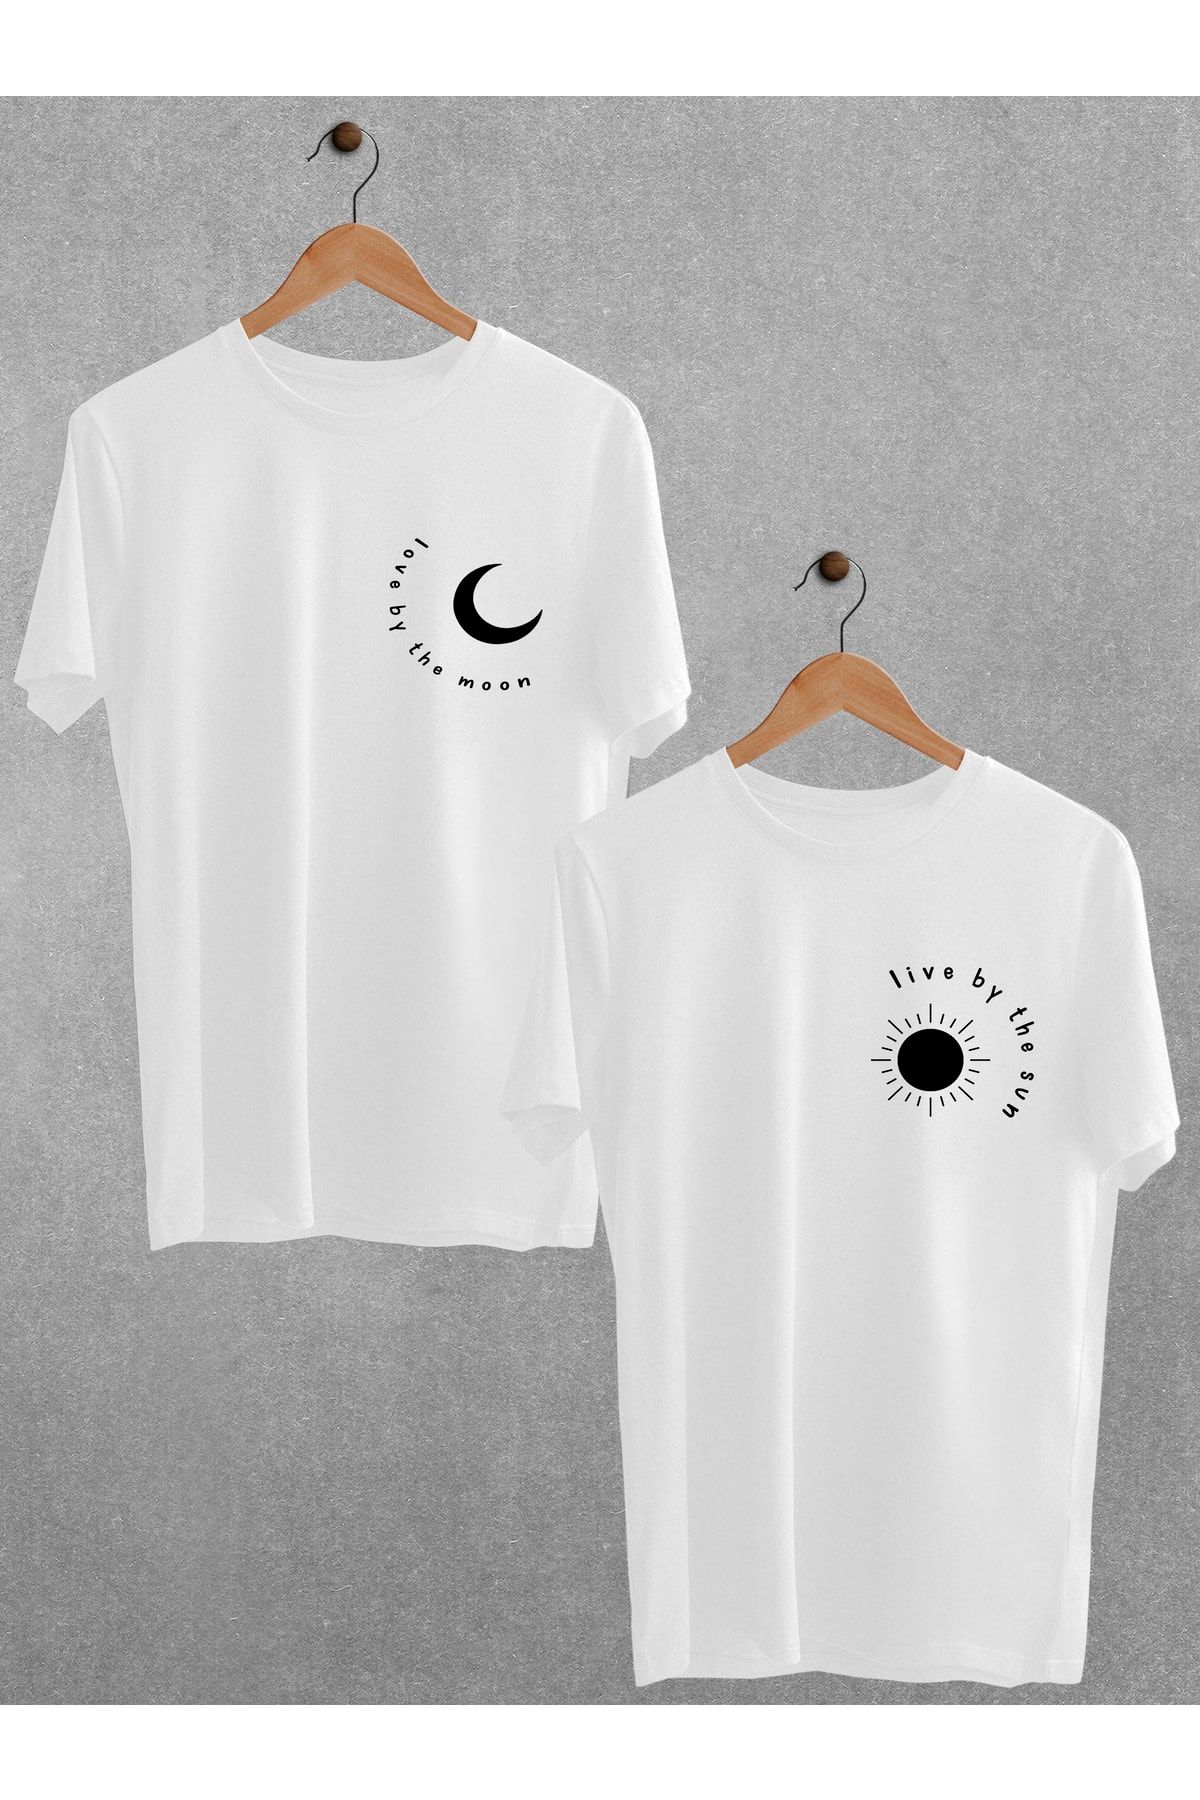 Pear Wear Moon Sun Baskılı Tişört Sevgili Çift Takım Ay Güneş Siyah Beyaz Oversize Couple T-shirt